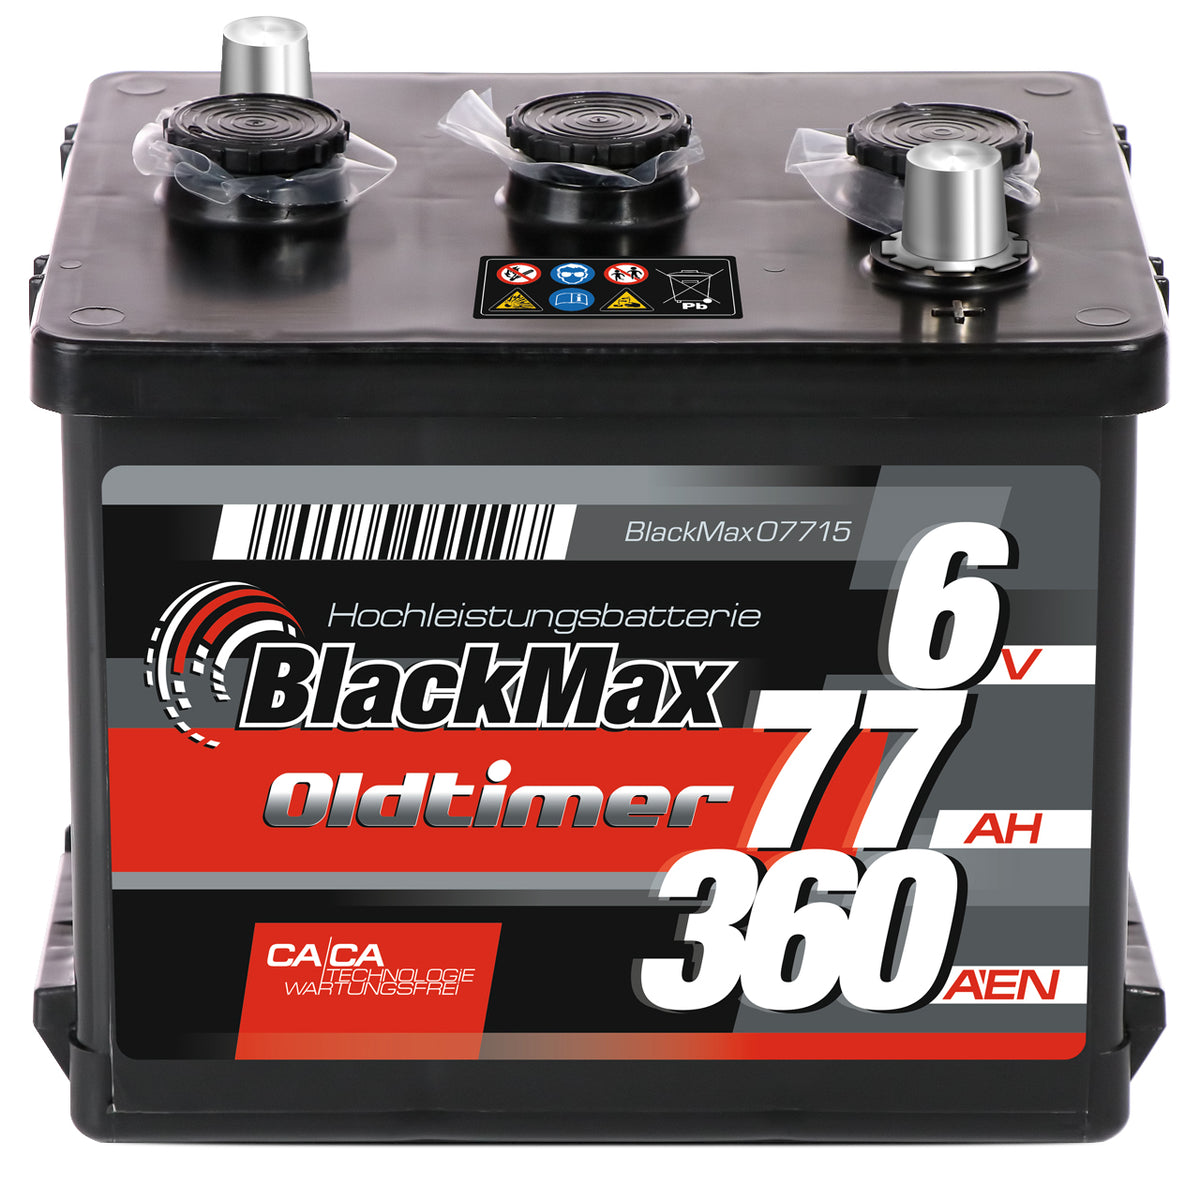 BlackMax07715 6V 77Ah 360A/EN trocken